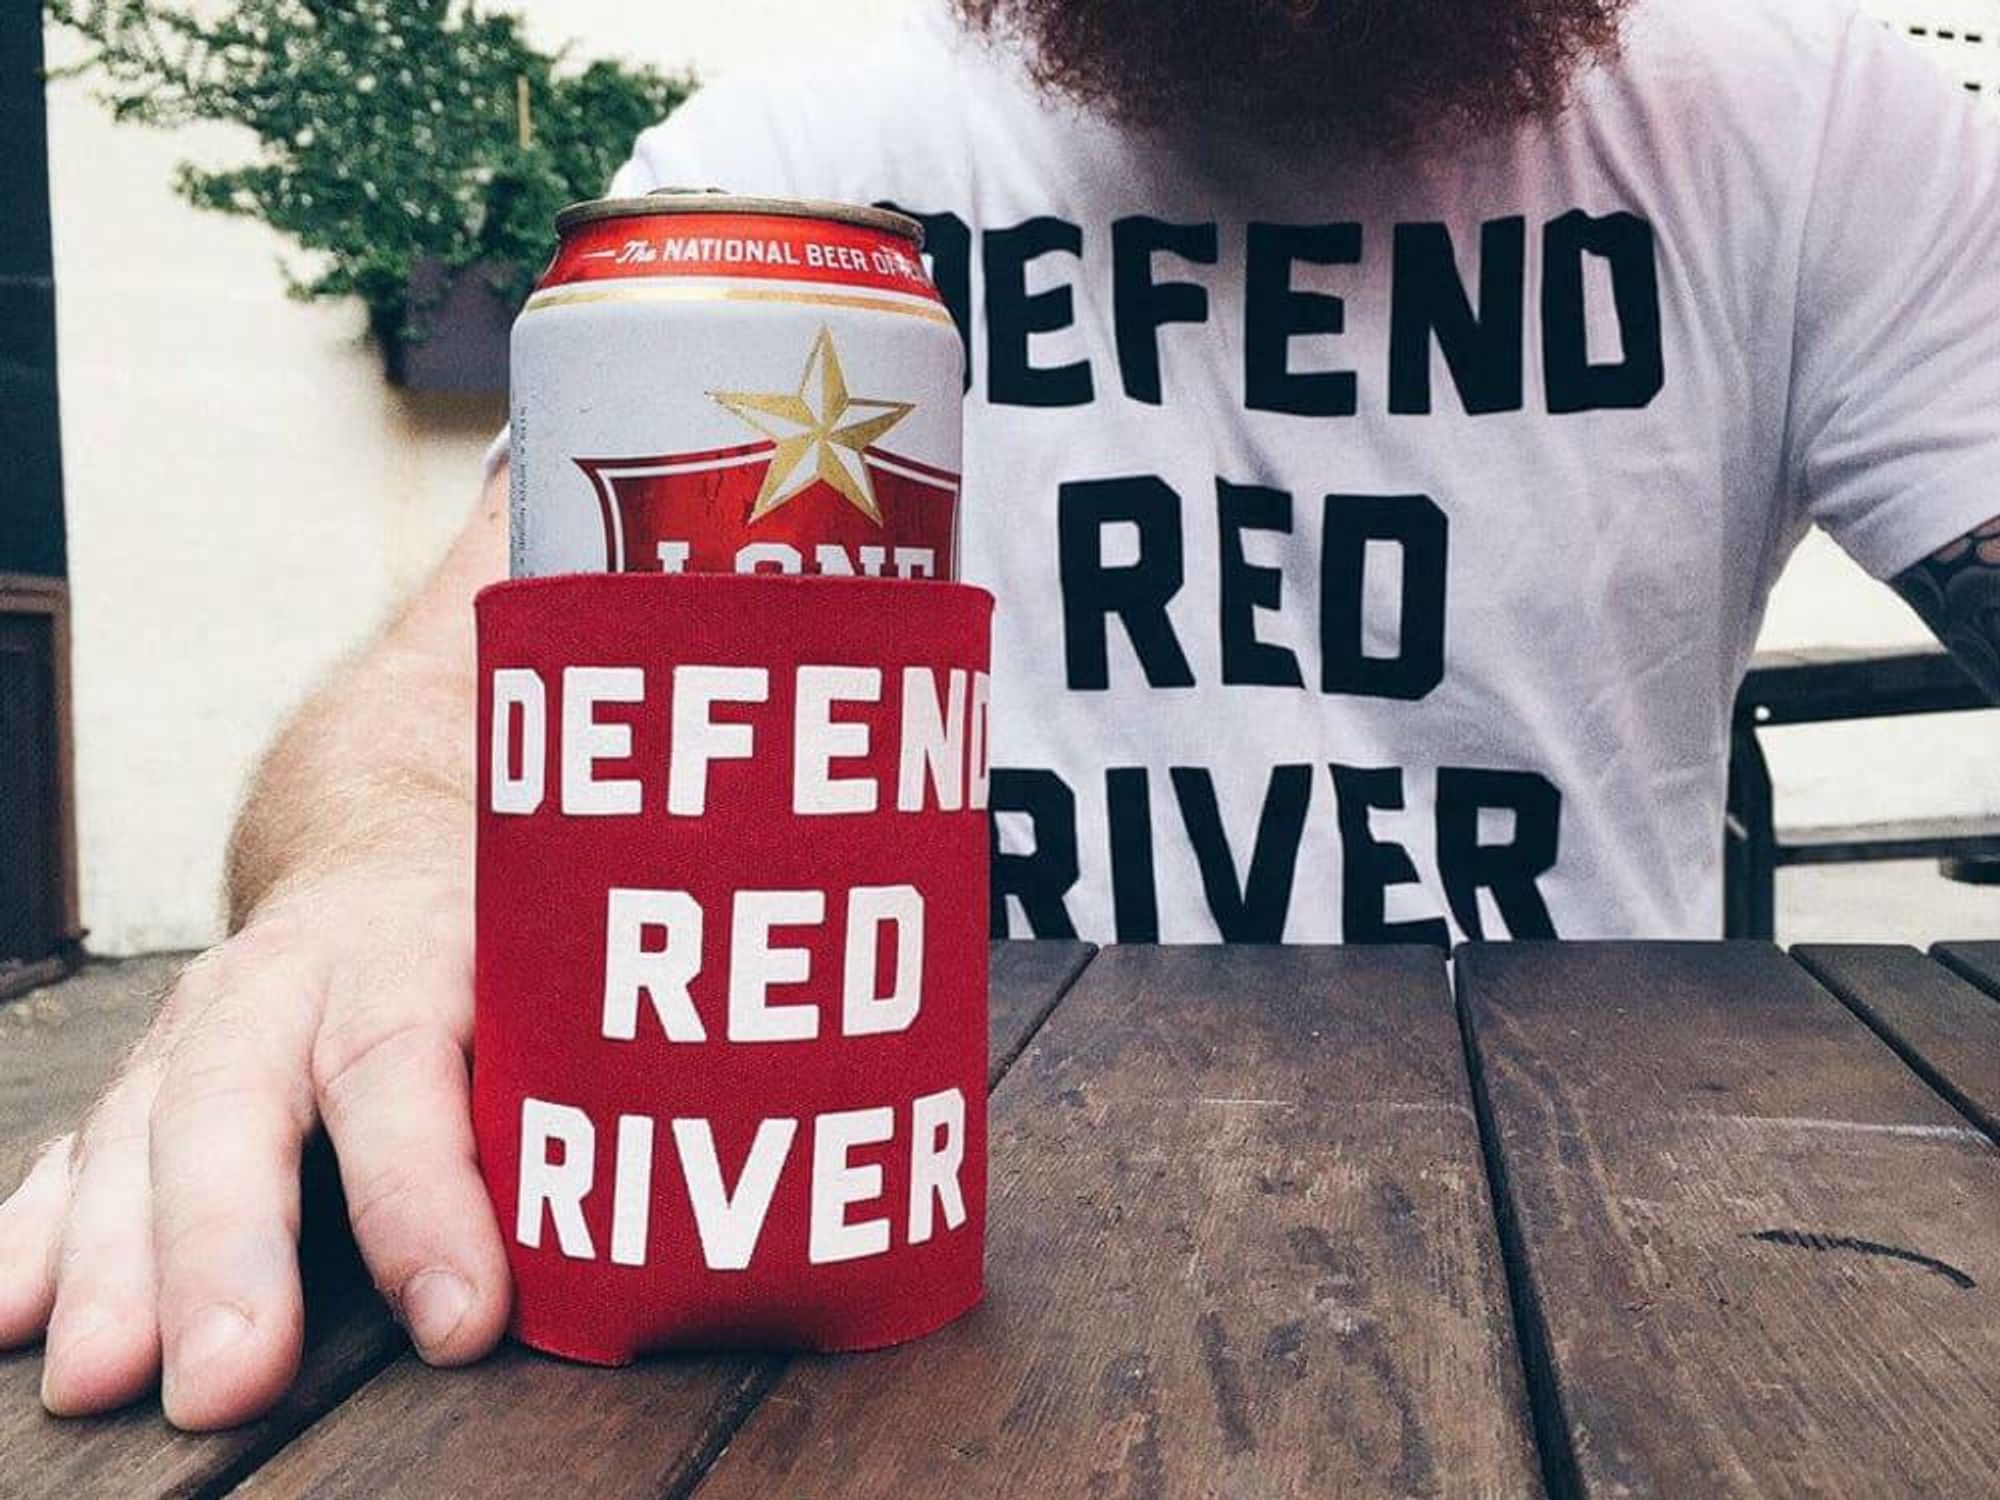 The Mohawk venue Defend Red River